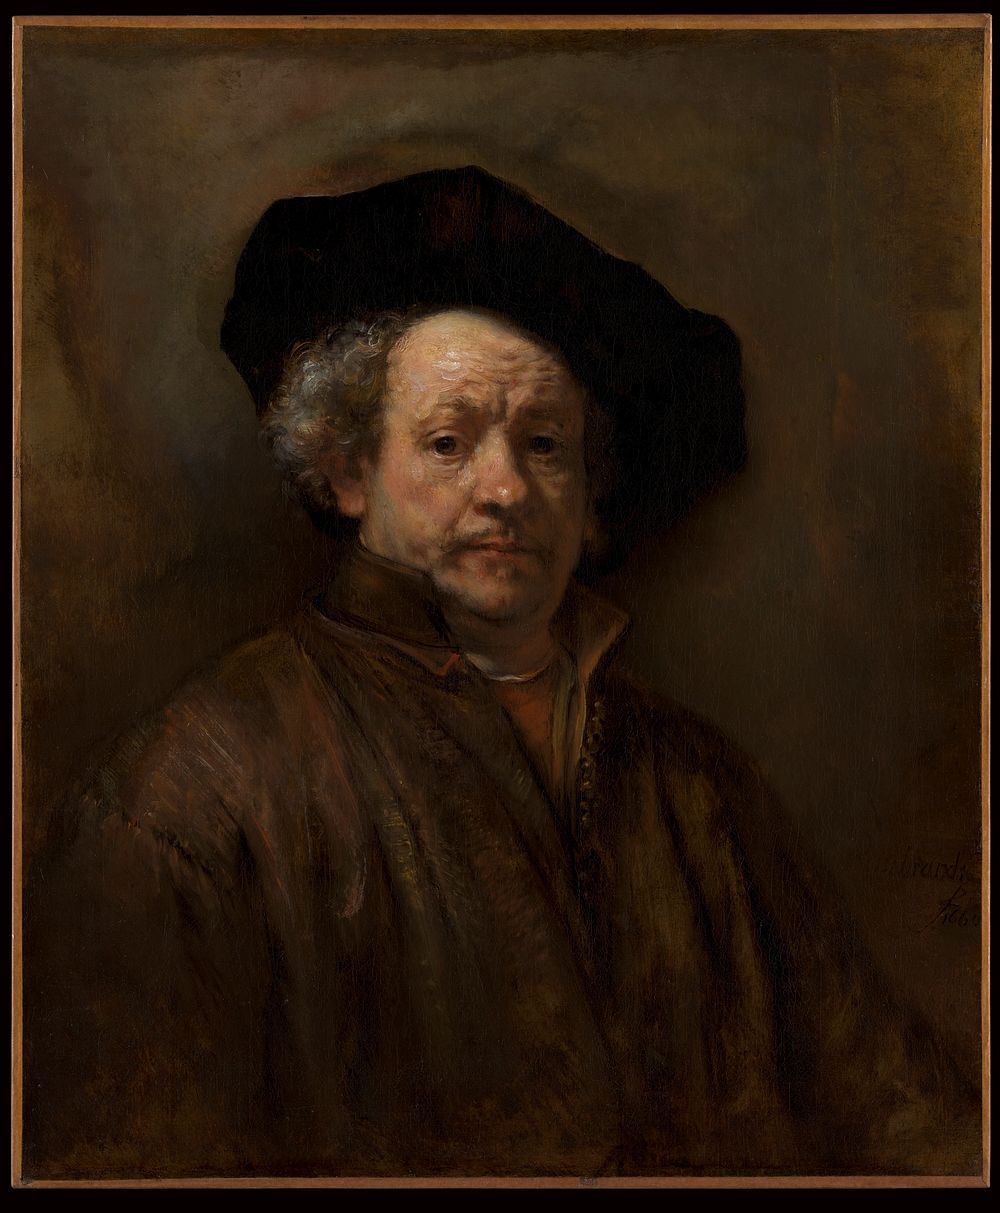 Self-Portrait by Rembrandt van Rijn